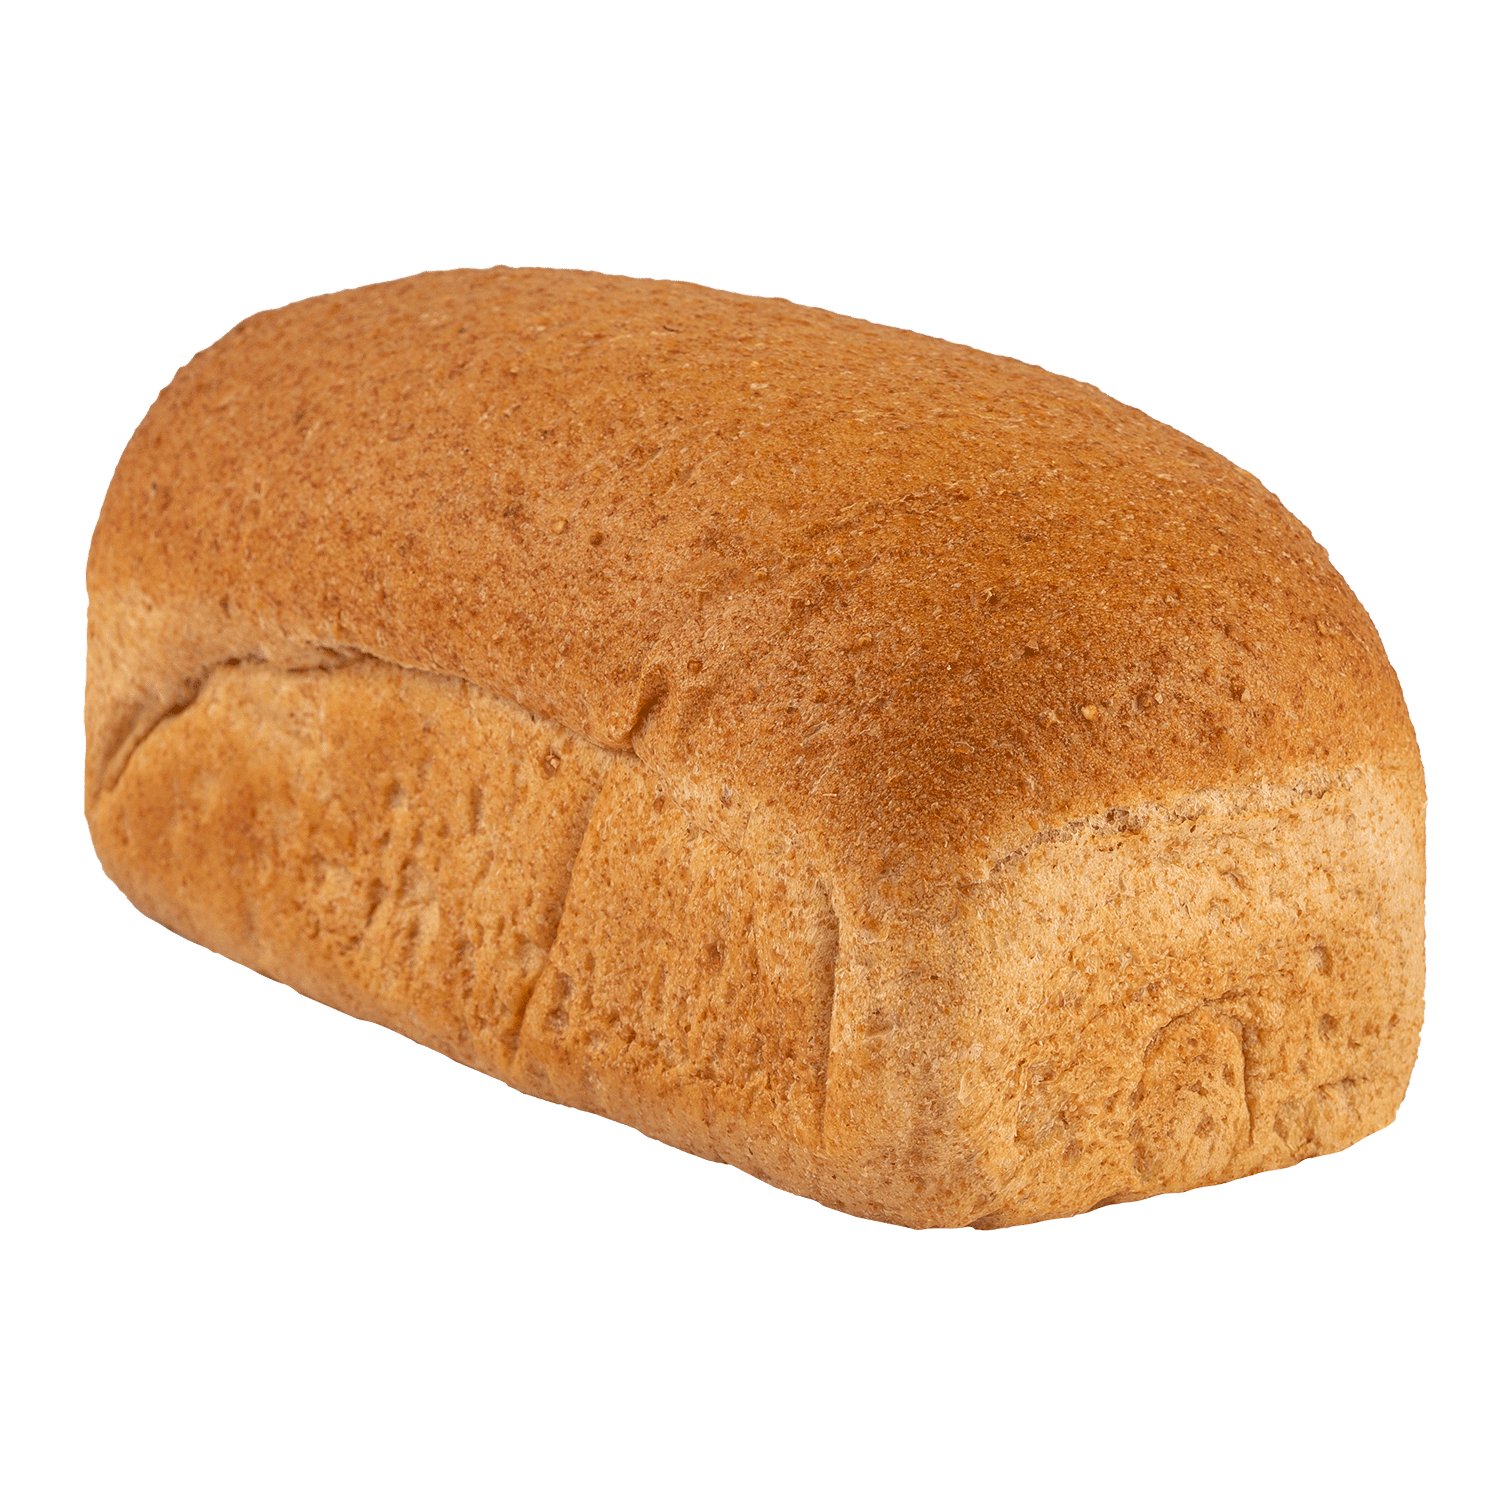 Whole Grain Bread Picture